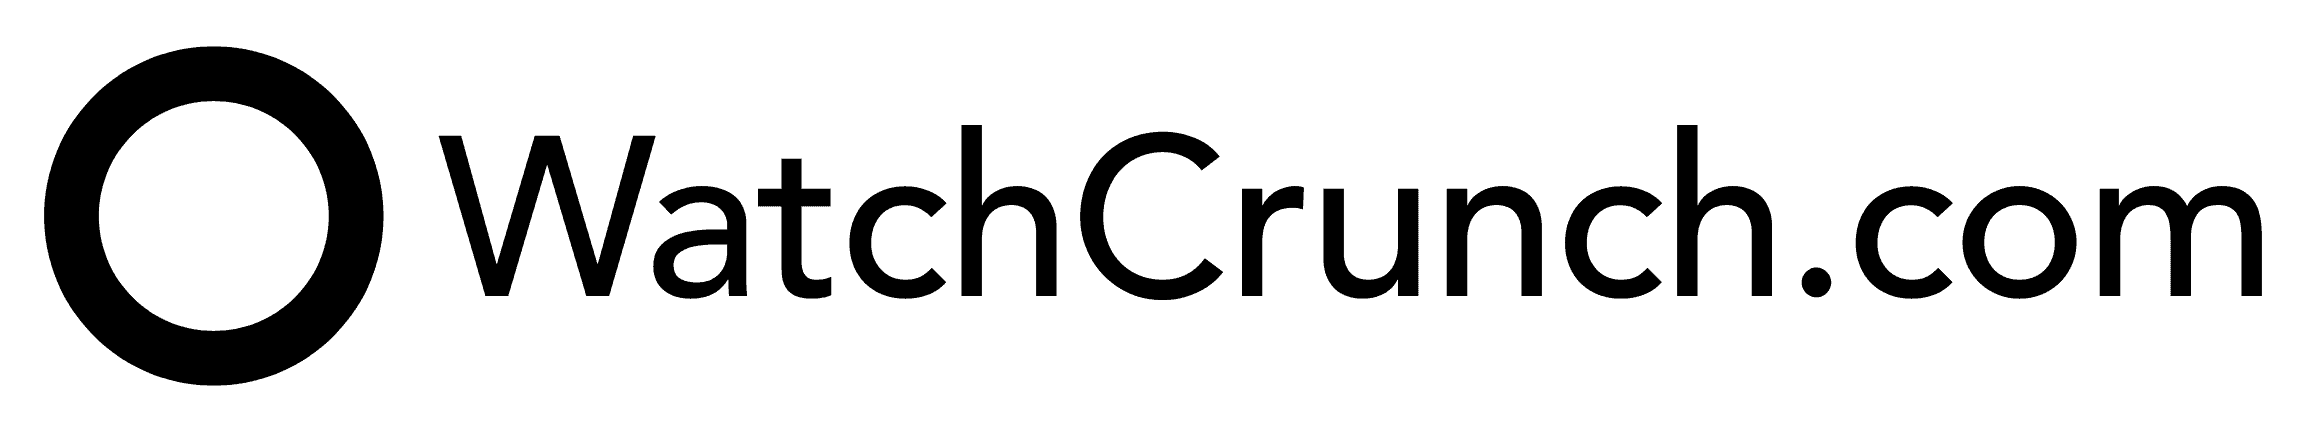 WatchCrunch.com